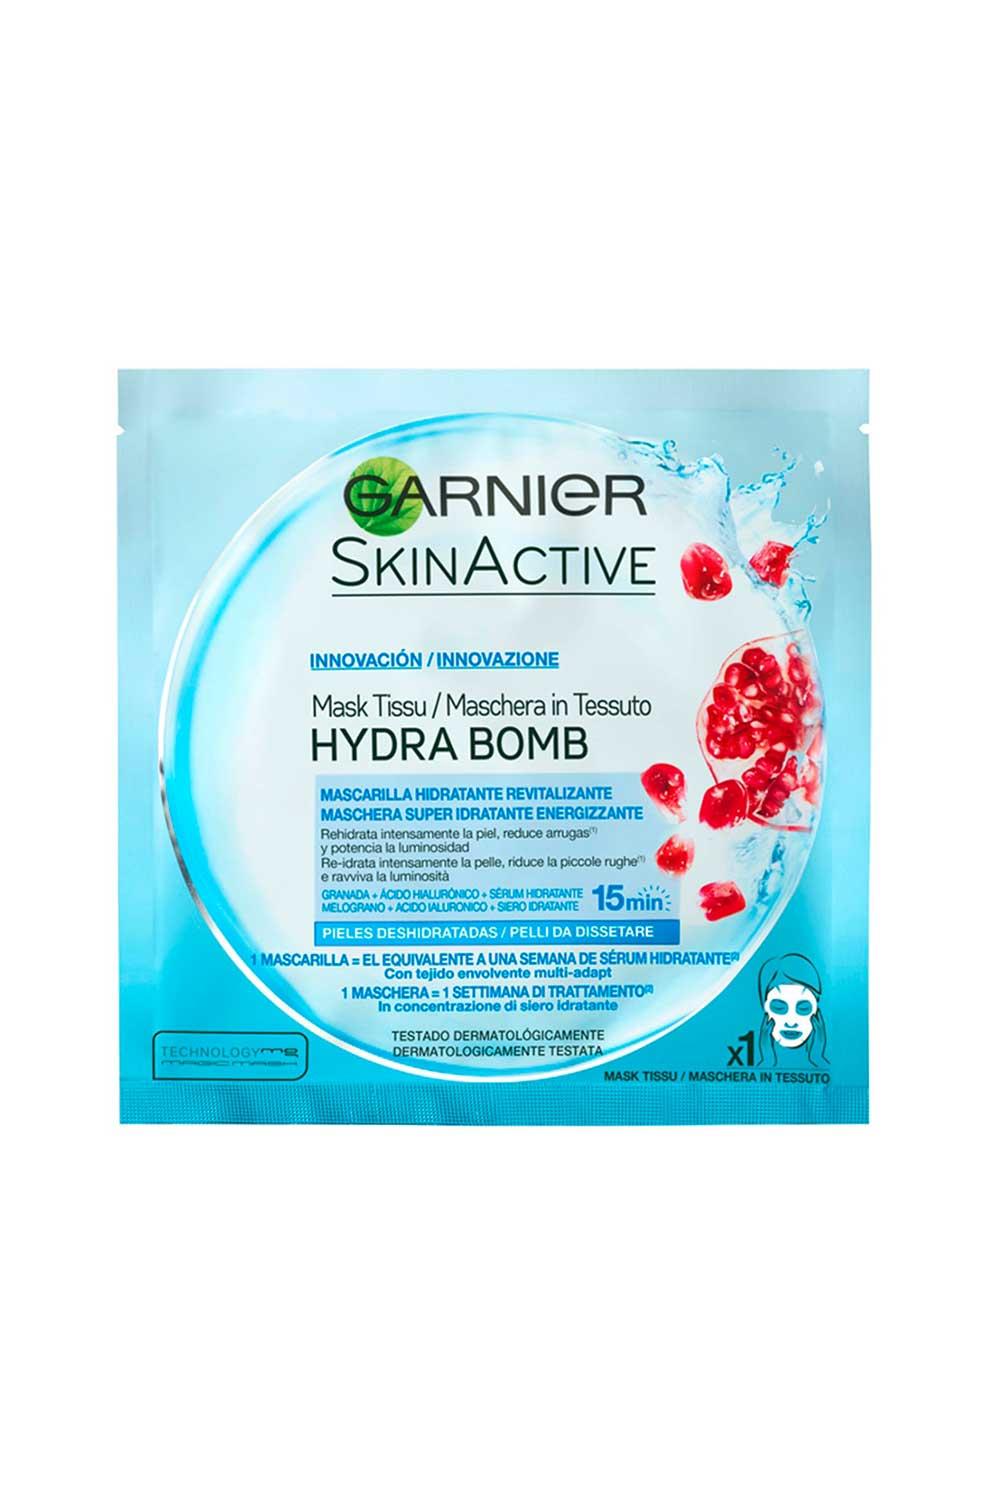 GGarGgarnier. A los 30: Mascarilla Skin Active HydraBomb Energizante de Garnier 